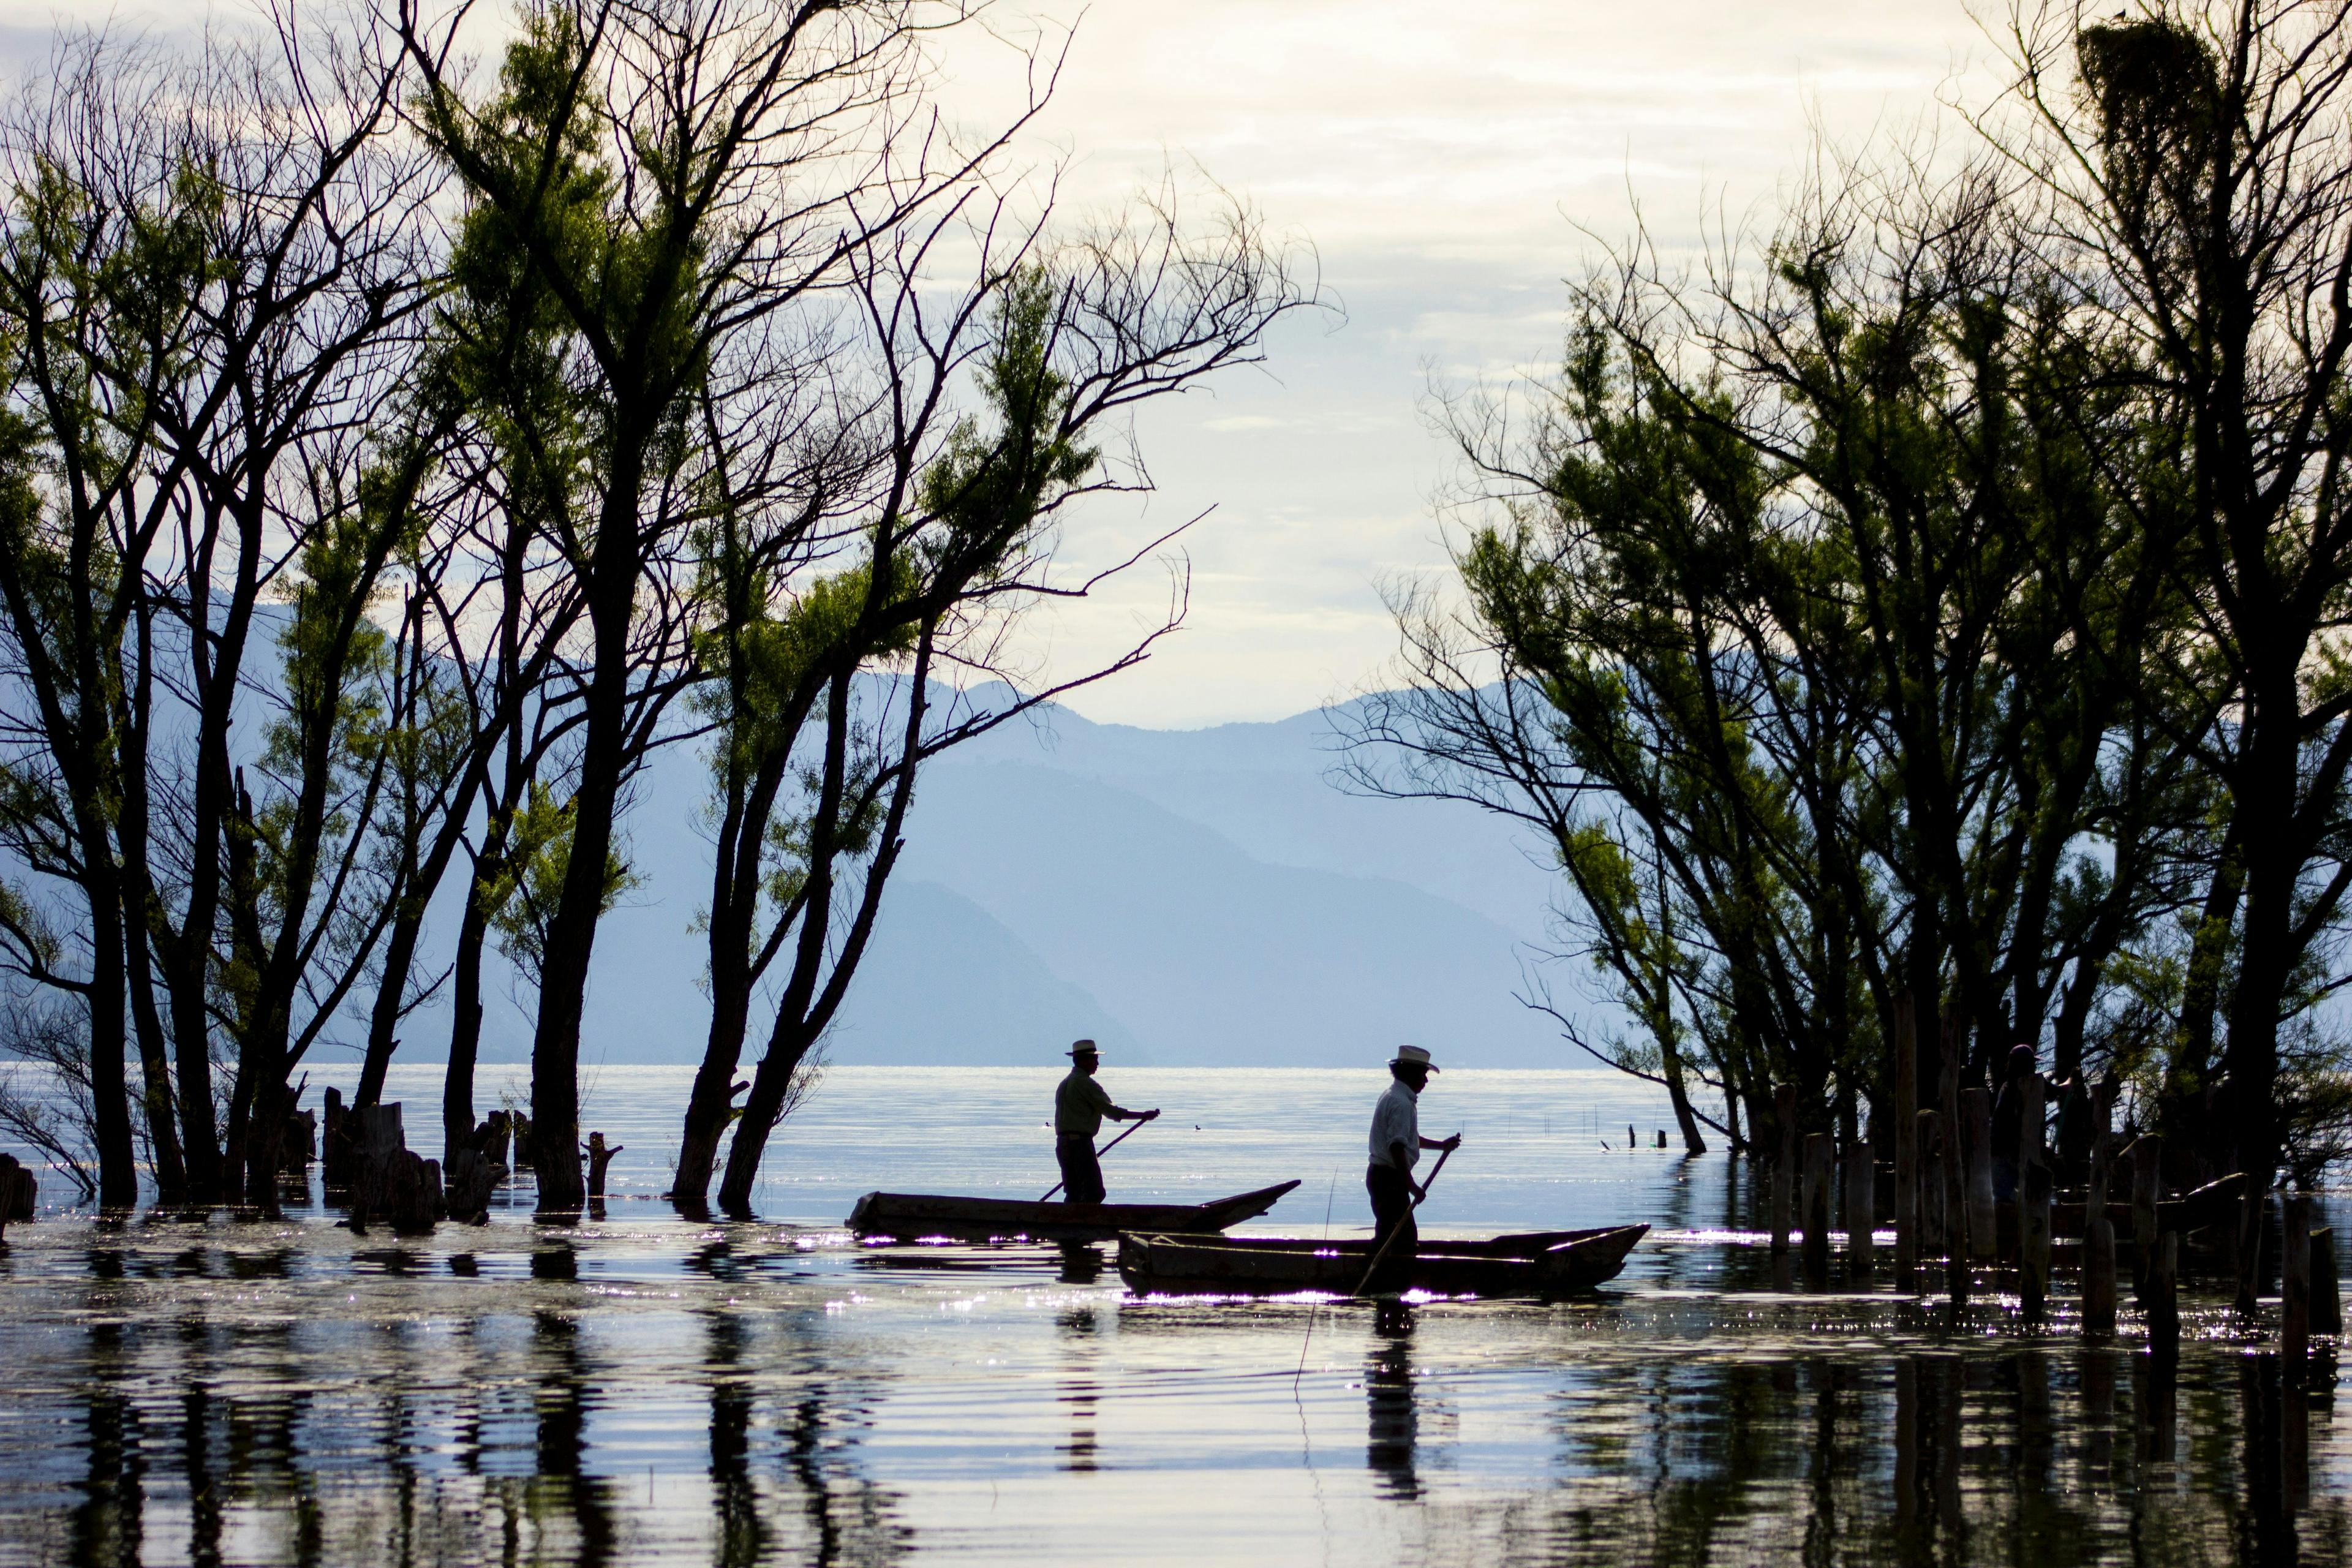 Fishermen on lake Atitlán in Guatemala.